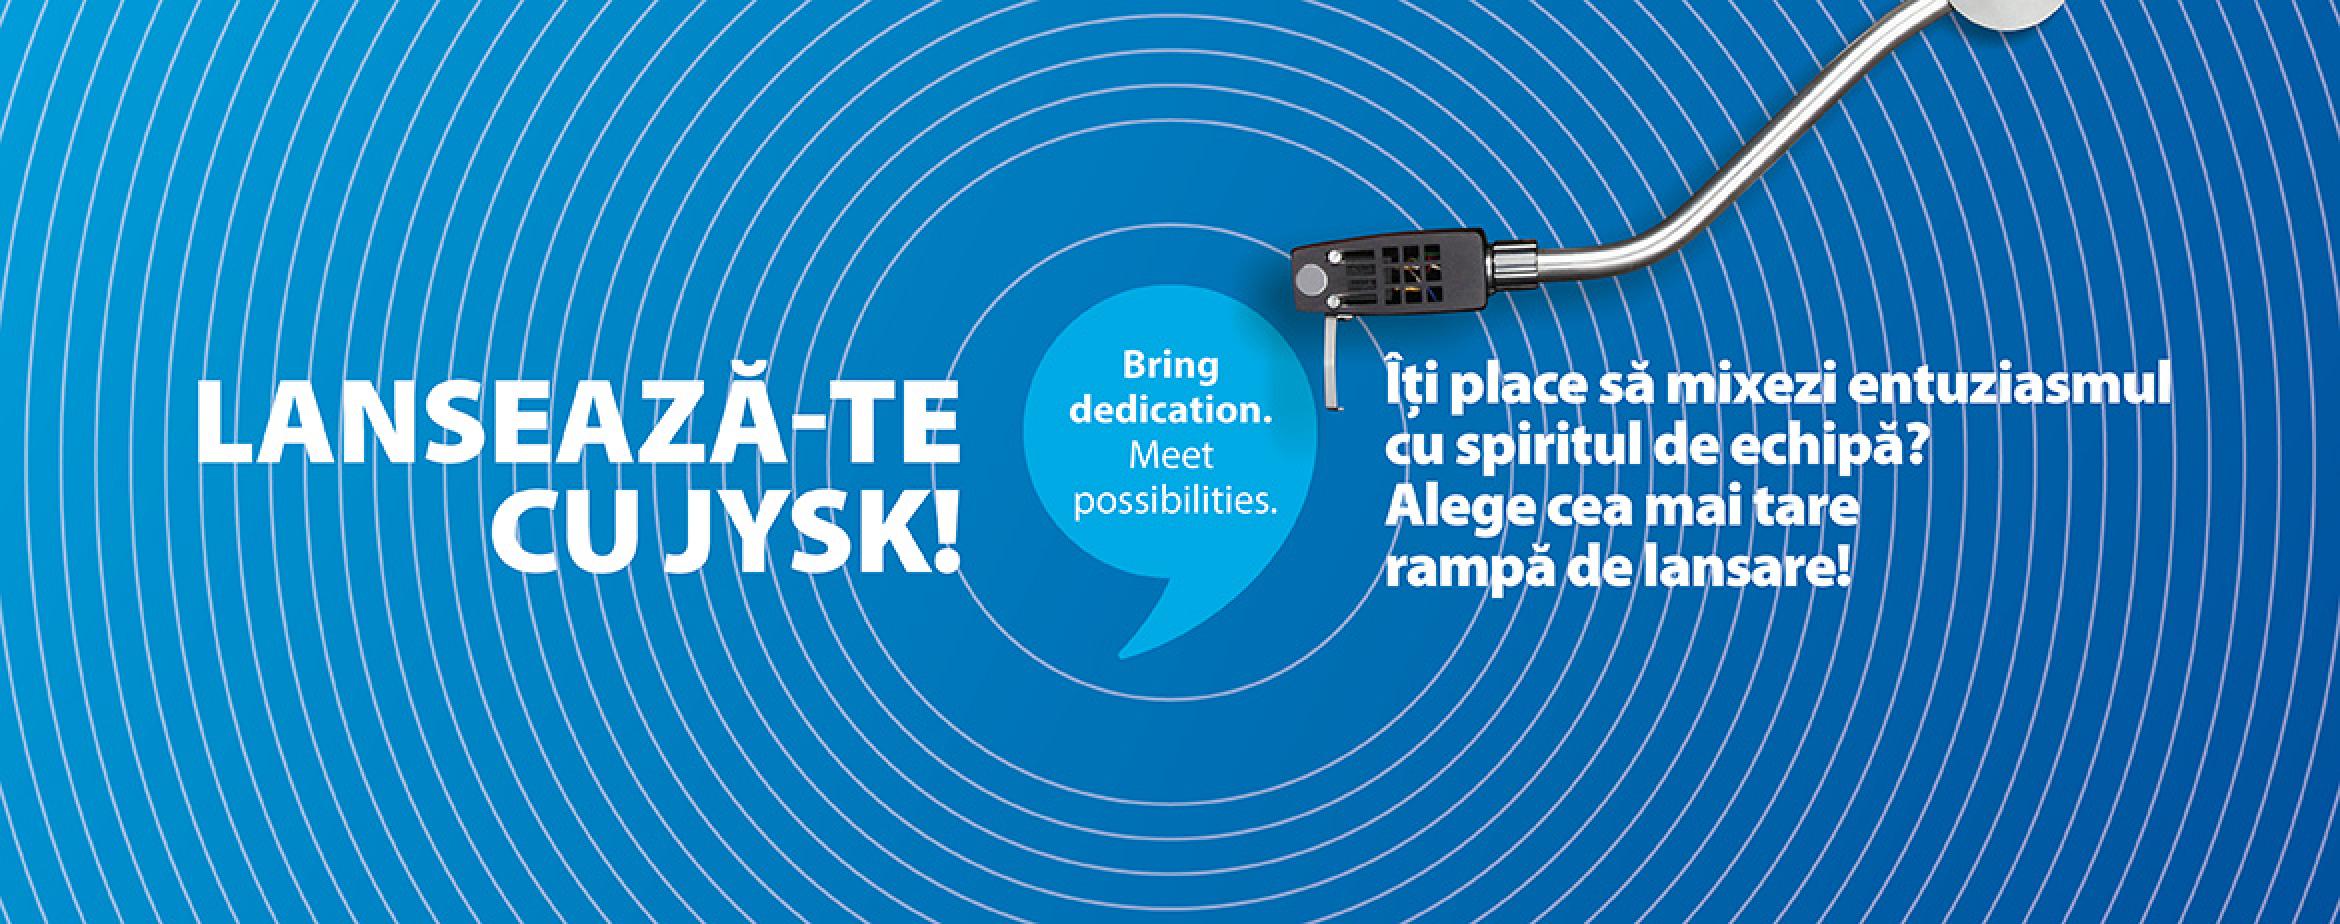 “Lansează-te cu JYSK”, noua campanie JYSK România